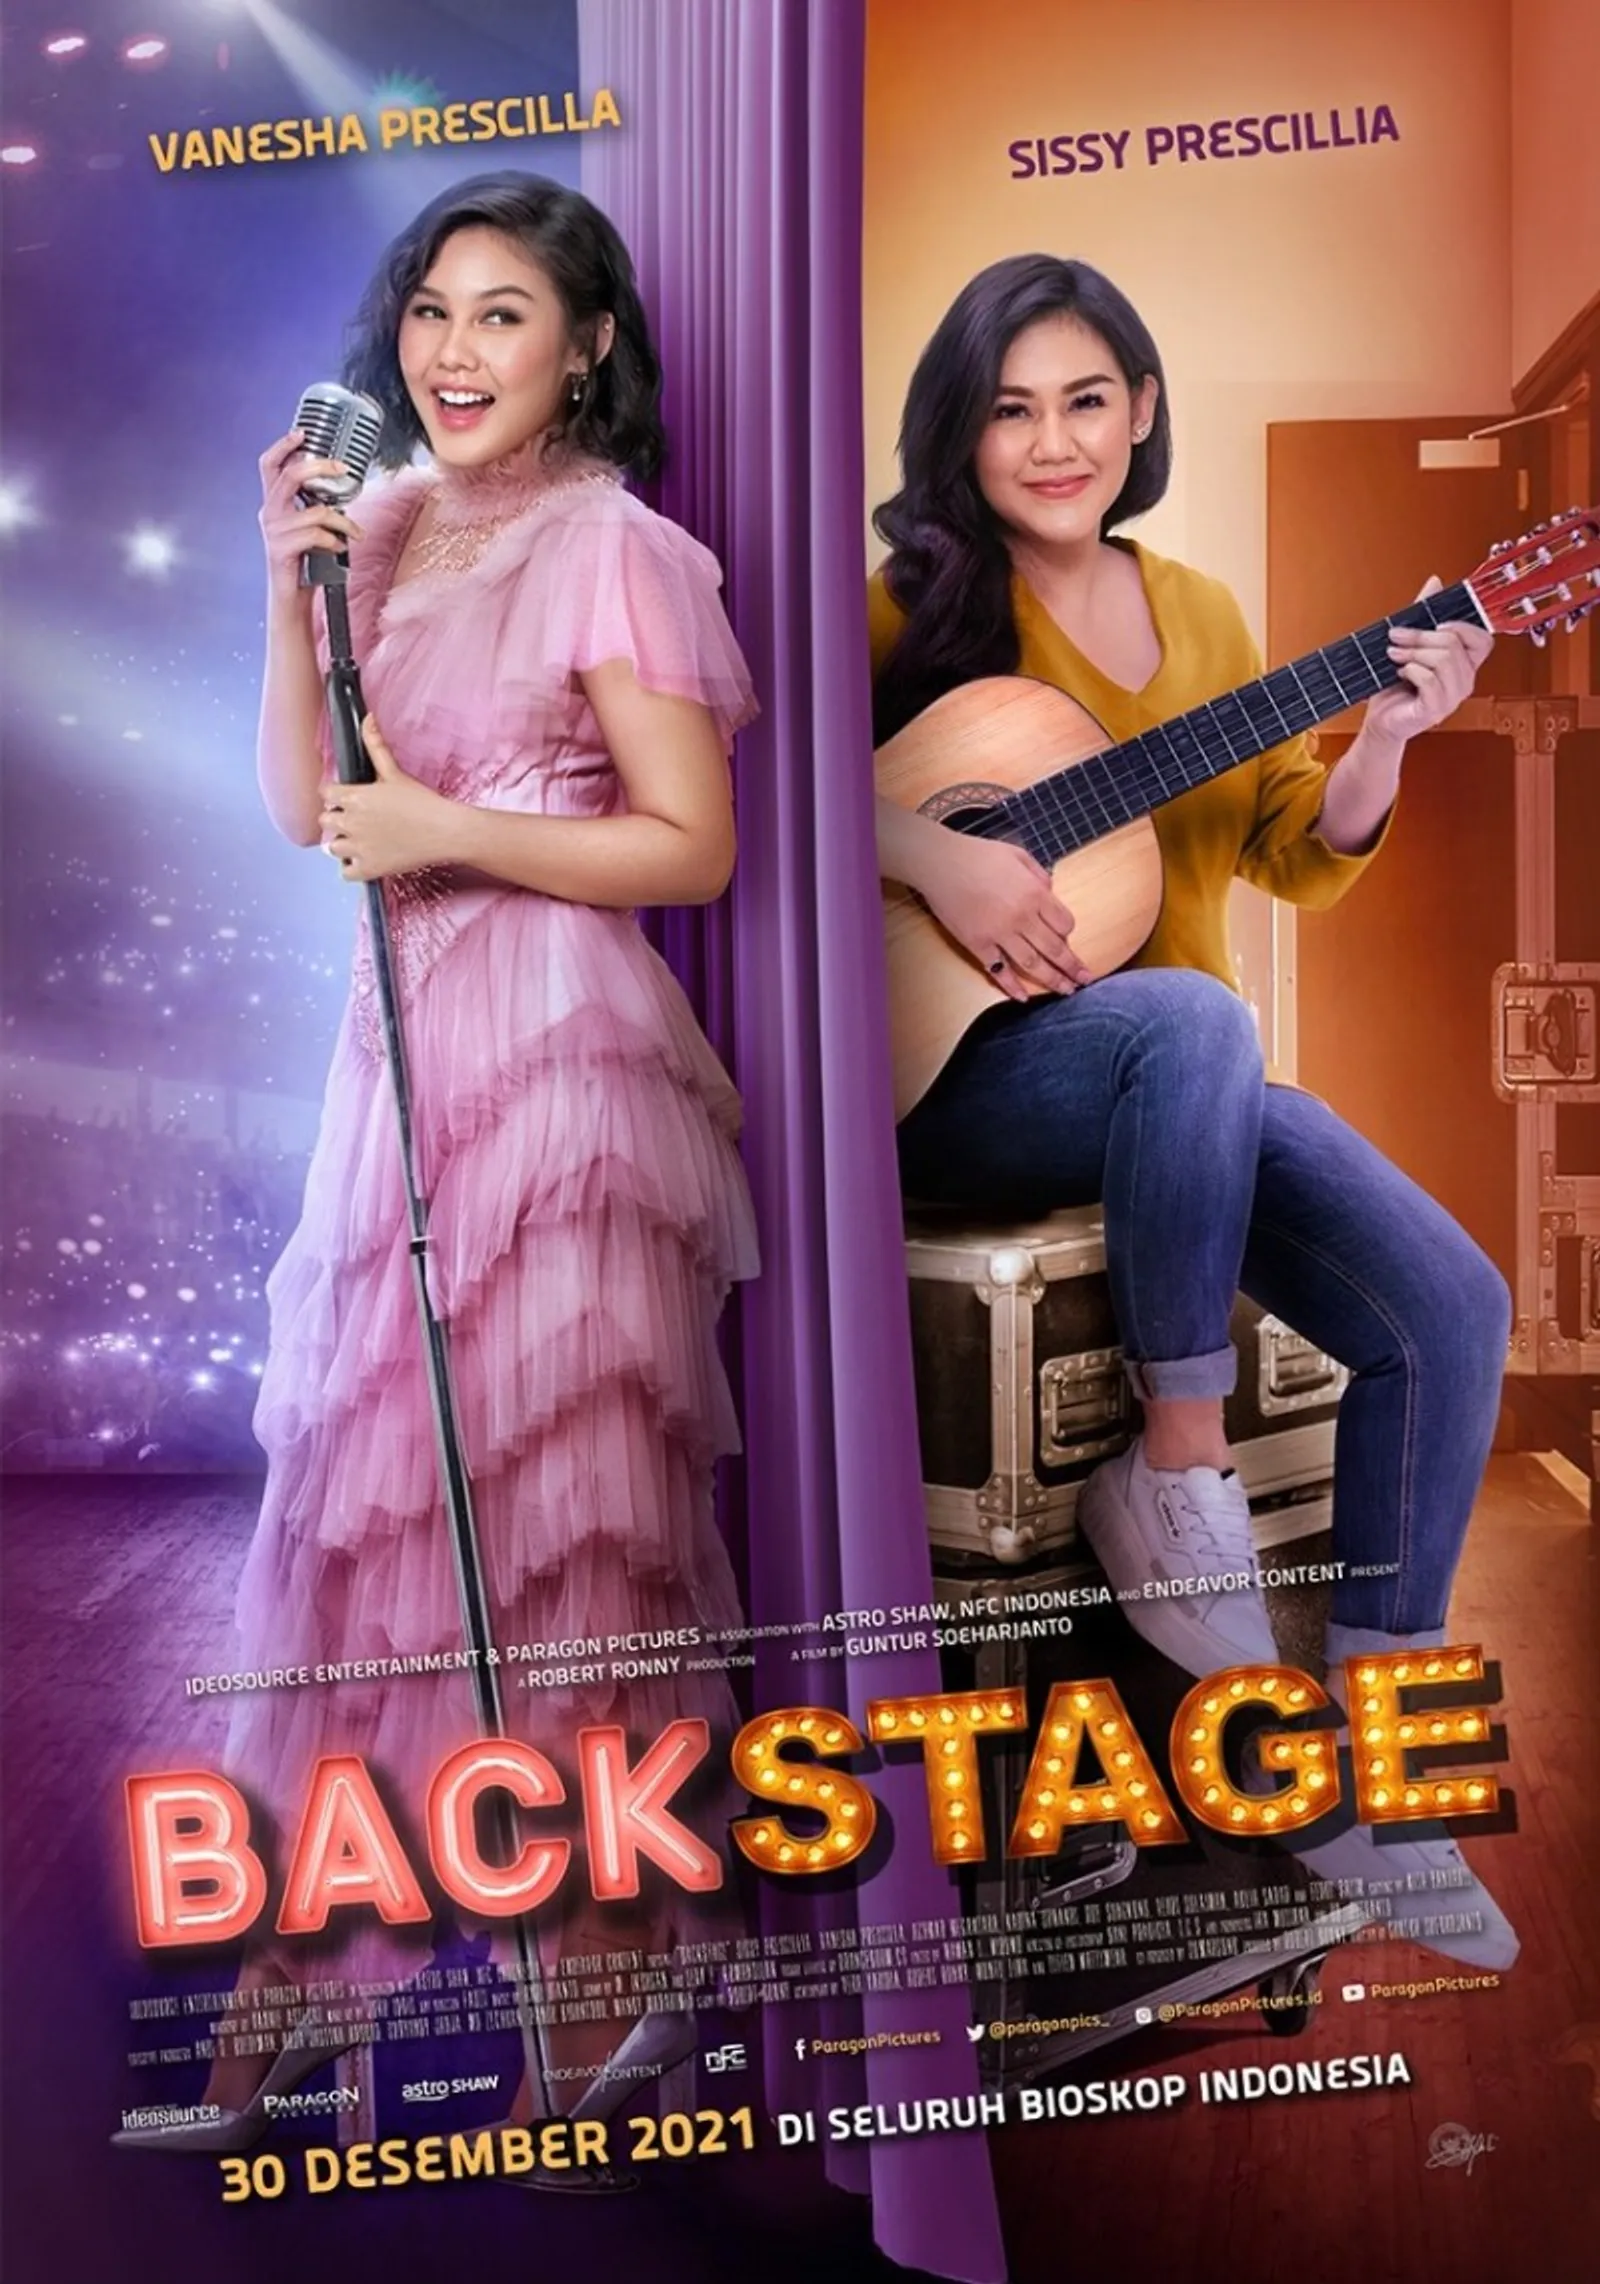 Duet Vanesha Prescilla & Sissy Prescillia, 5 Fakta Menarik 'Backstage'